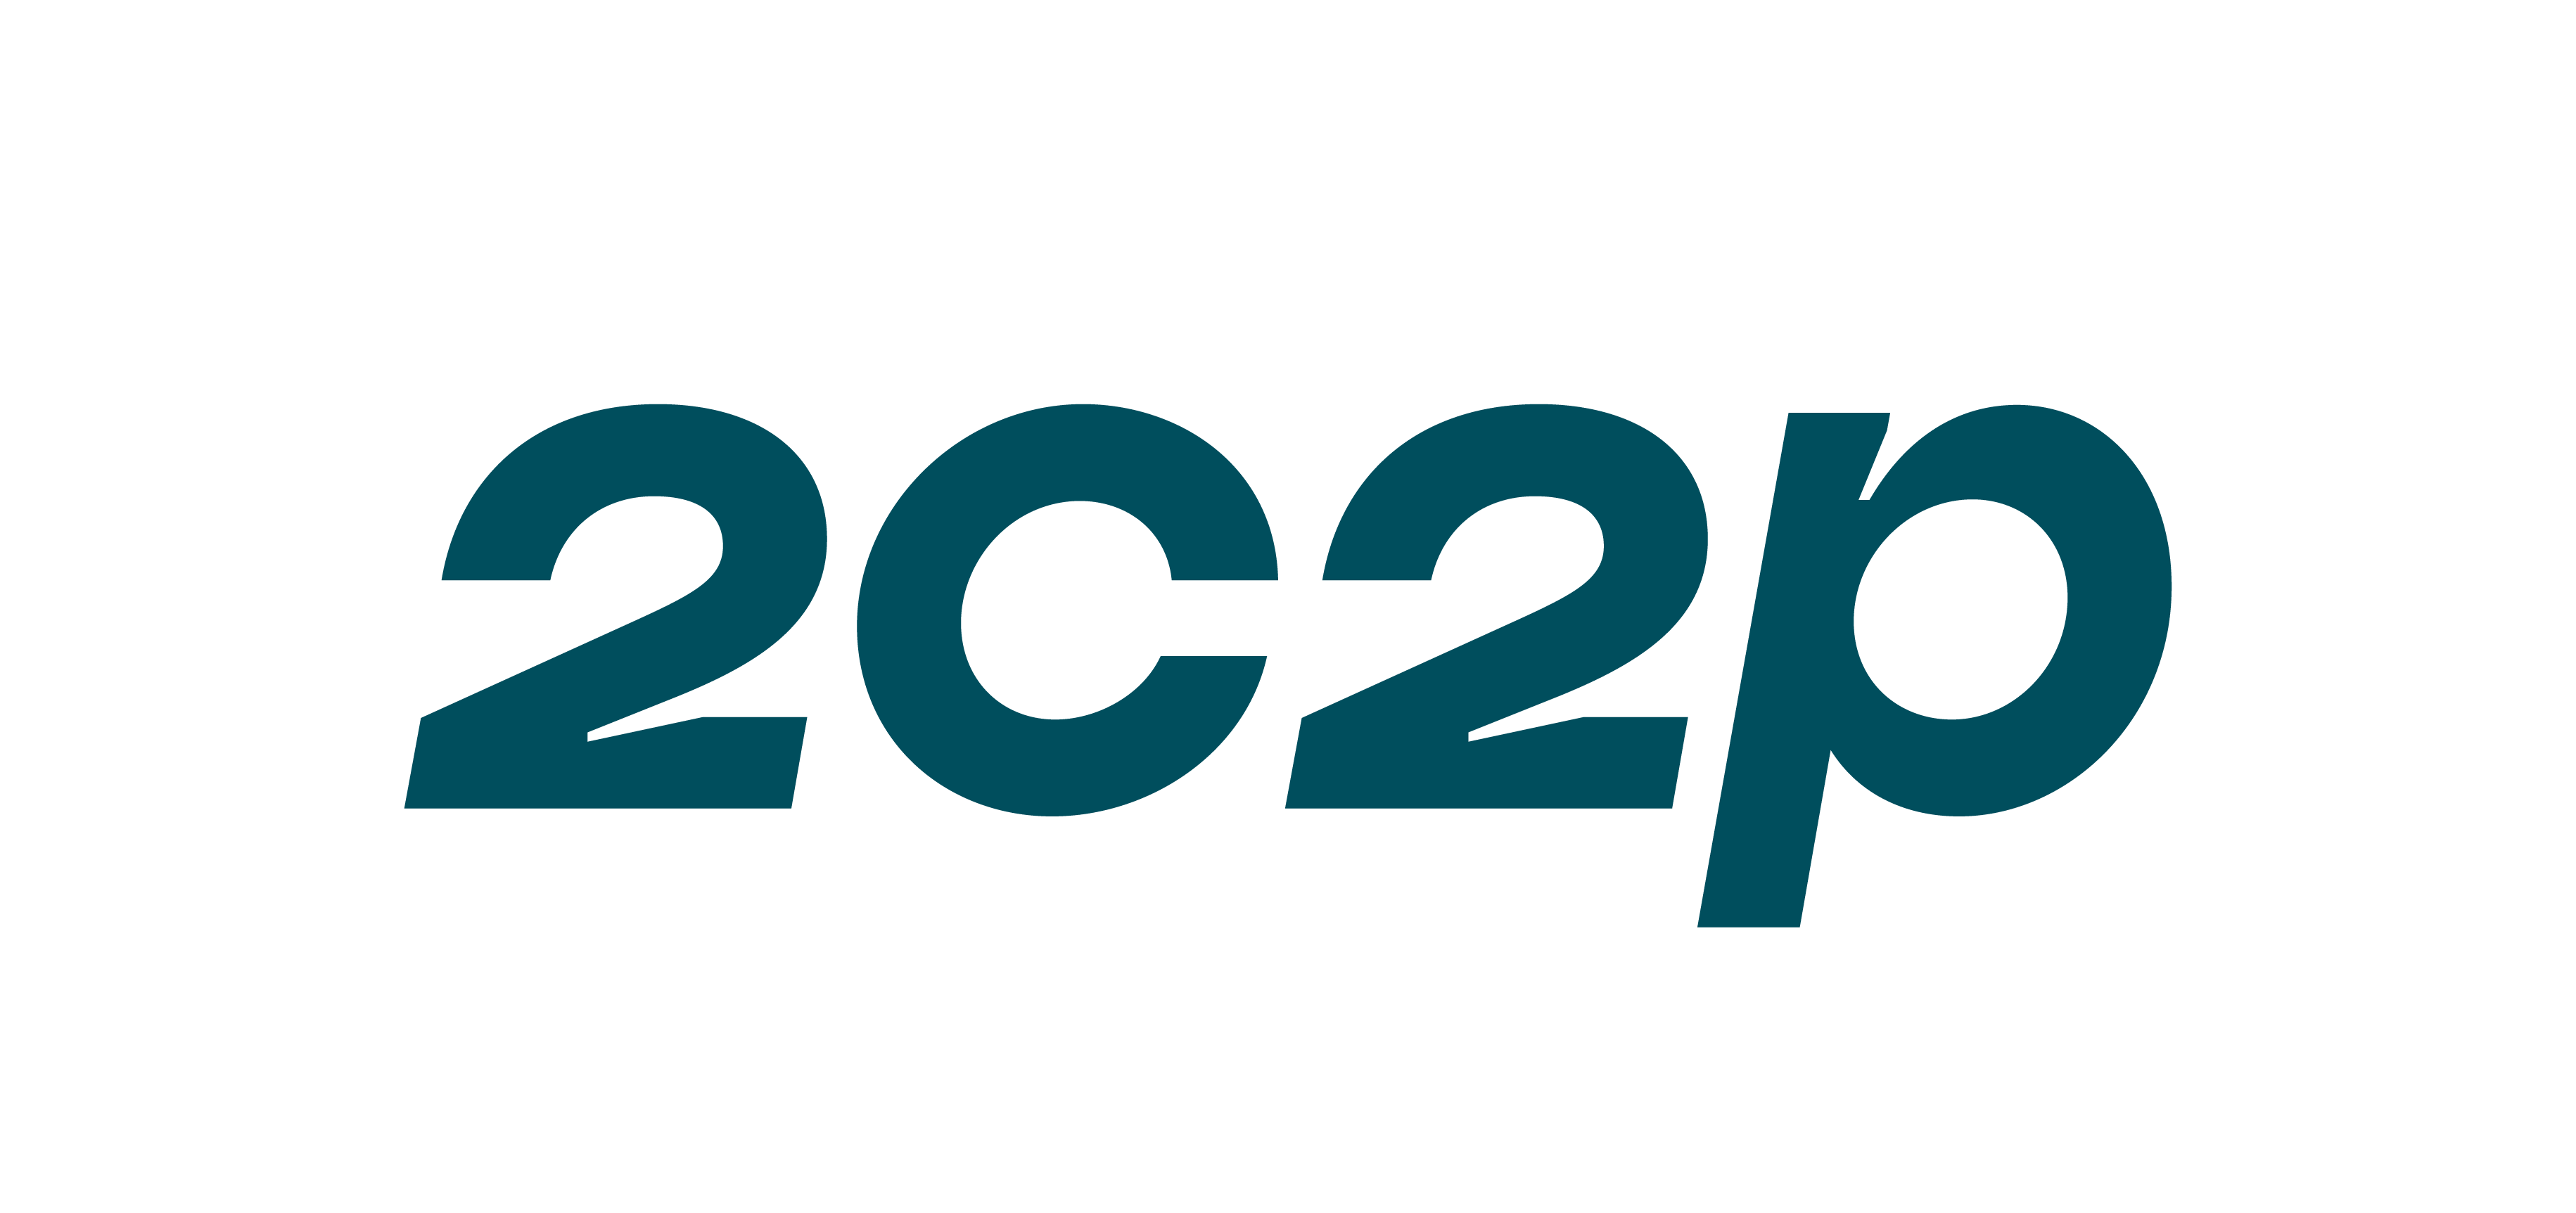 2C2P